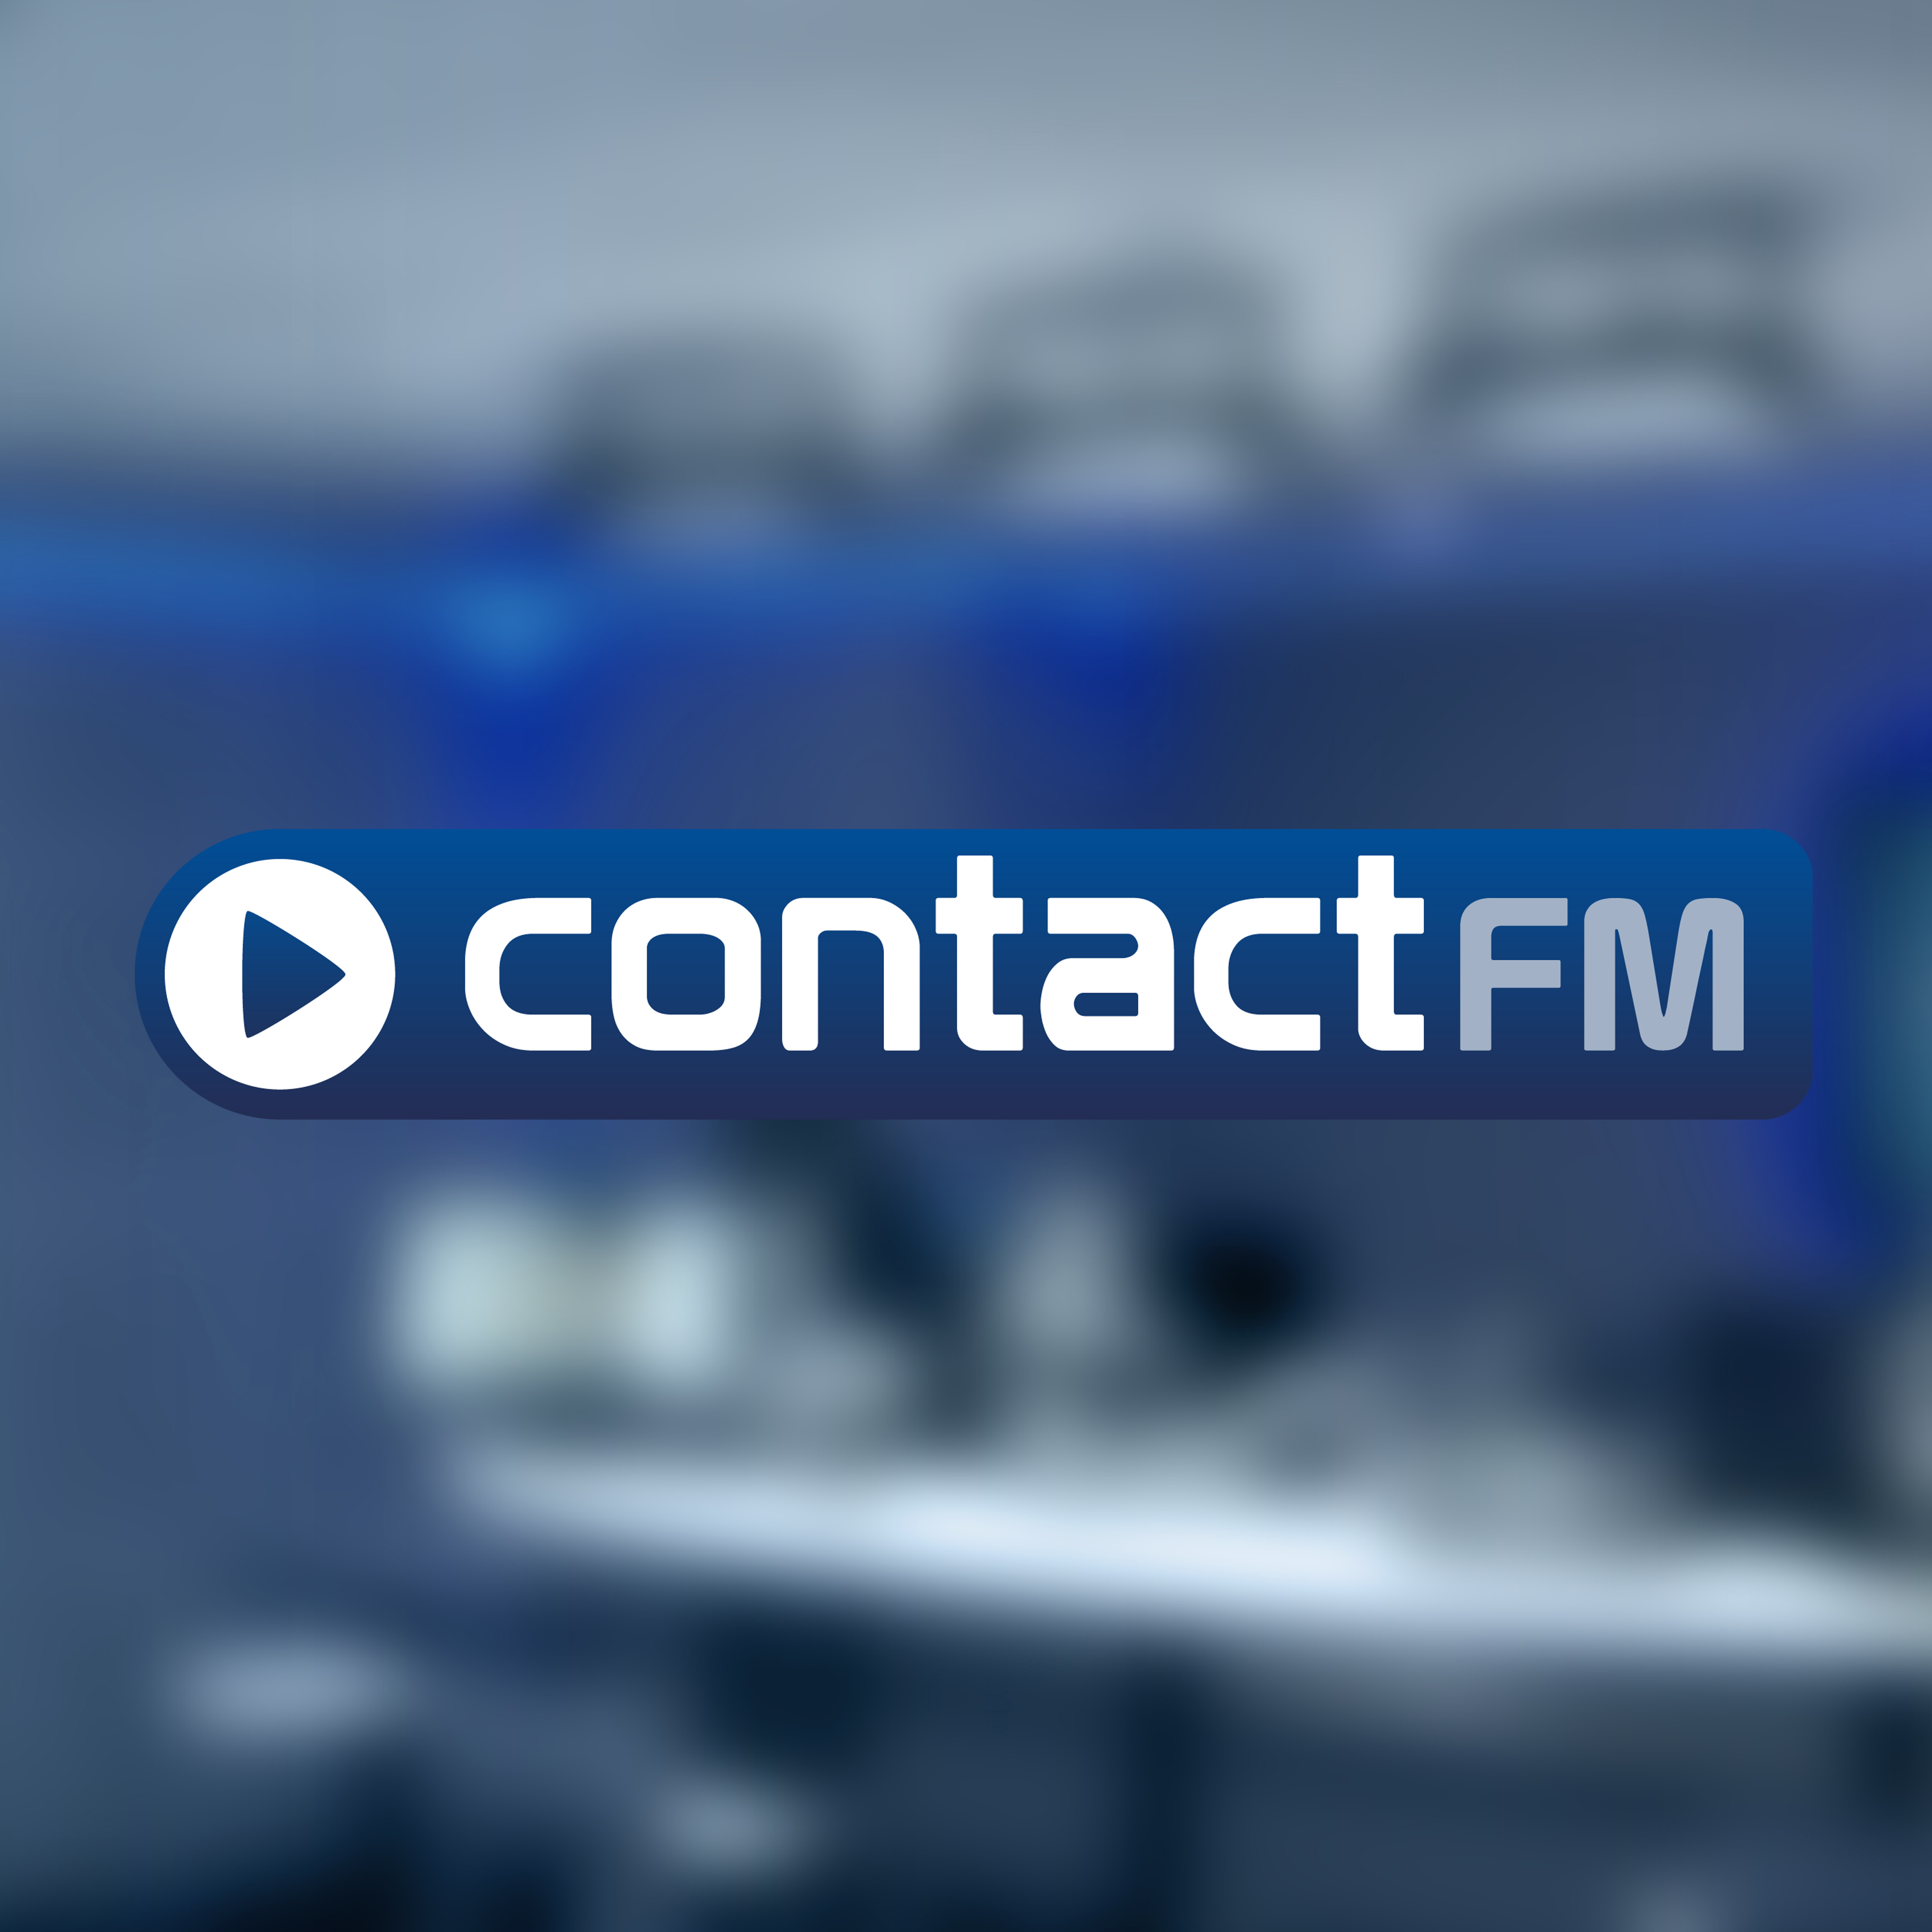 CONTACT FM RECHERCHE UN GRAPHISTE FREELANCE